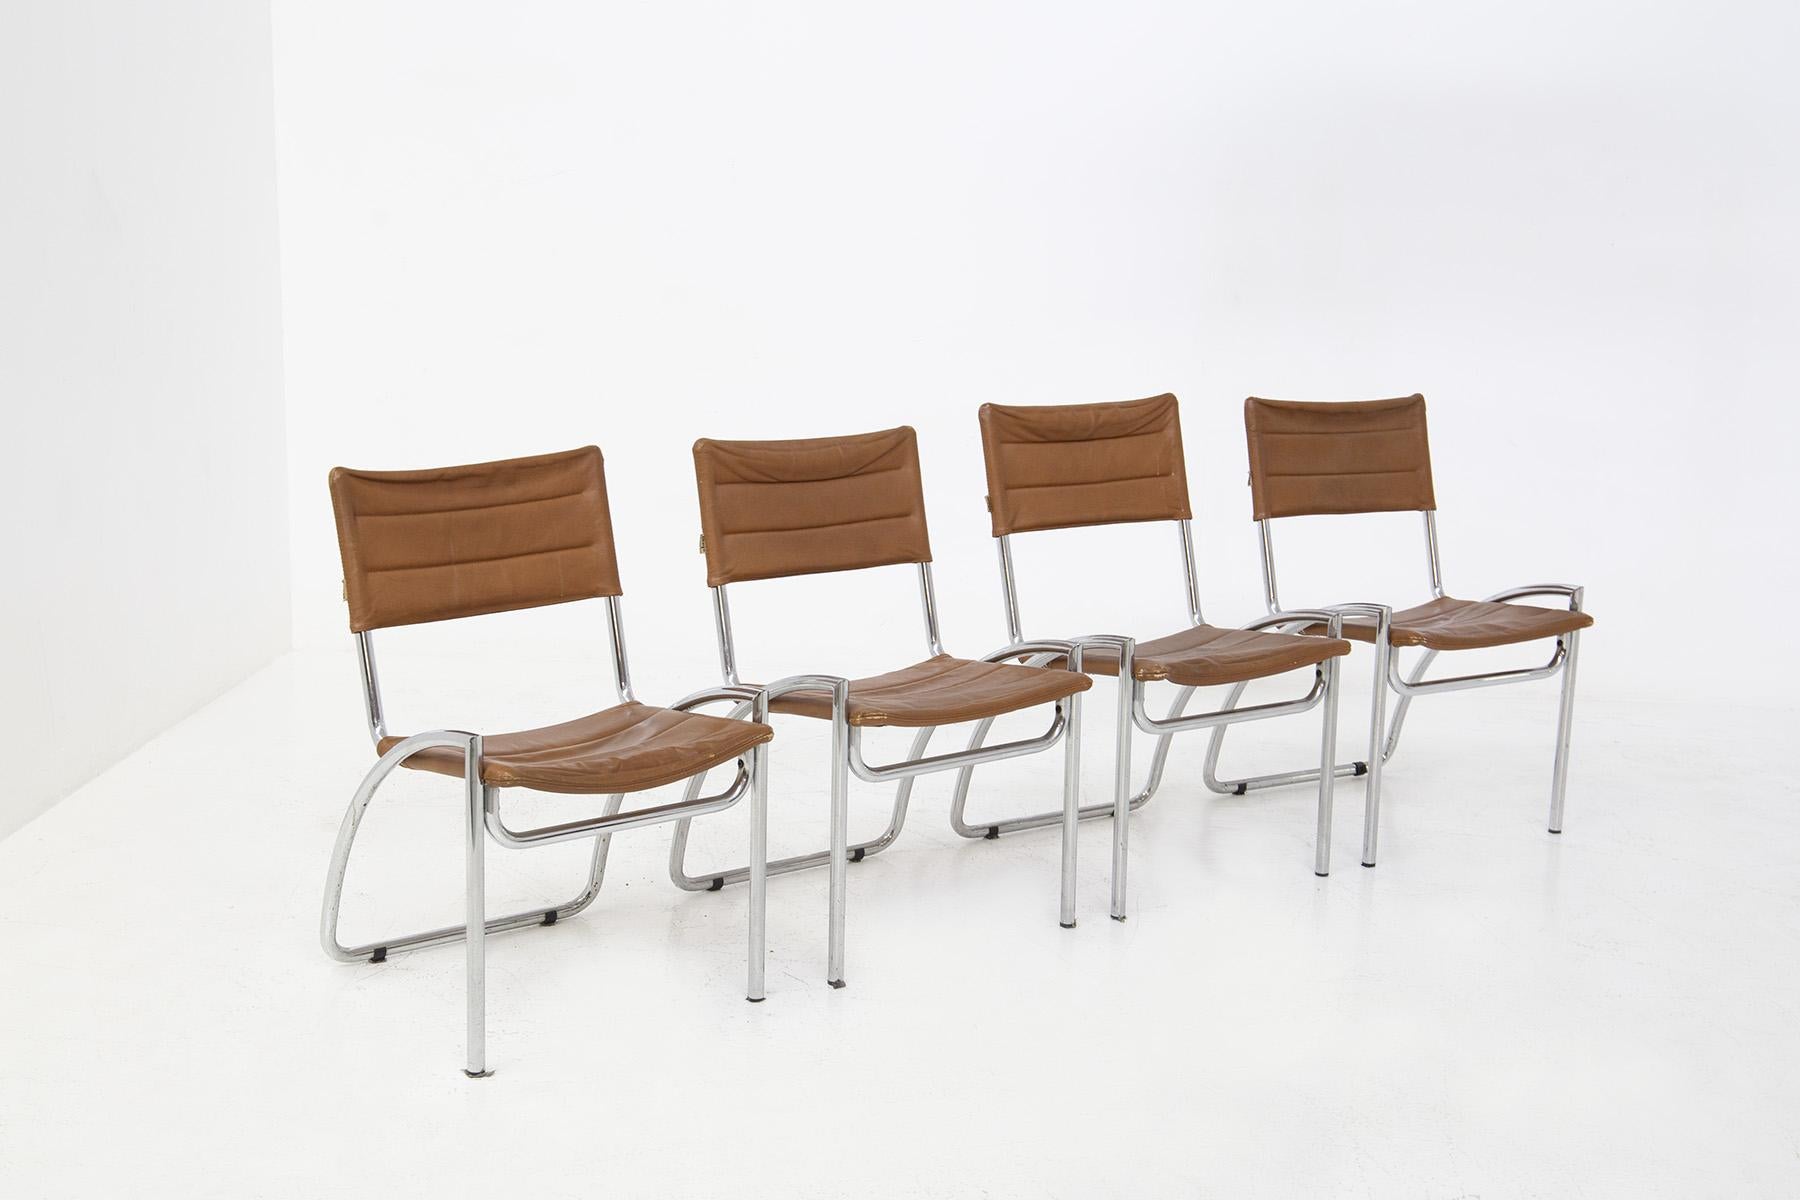 Modernes Set aus vier Stühlen, entworfen von Gae Aulenti für die Manufaktur ELAM in den 1970er Jahren. Die Stühle sind das sehr seltene Modell LIRA. Das Stuhlset besteht aus einem geschwungenen, verchromten Metallrahmen, der den Sitz energetisch